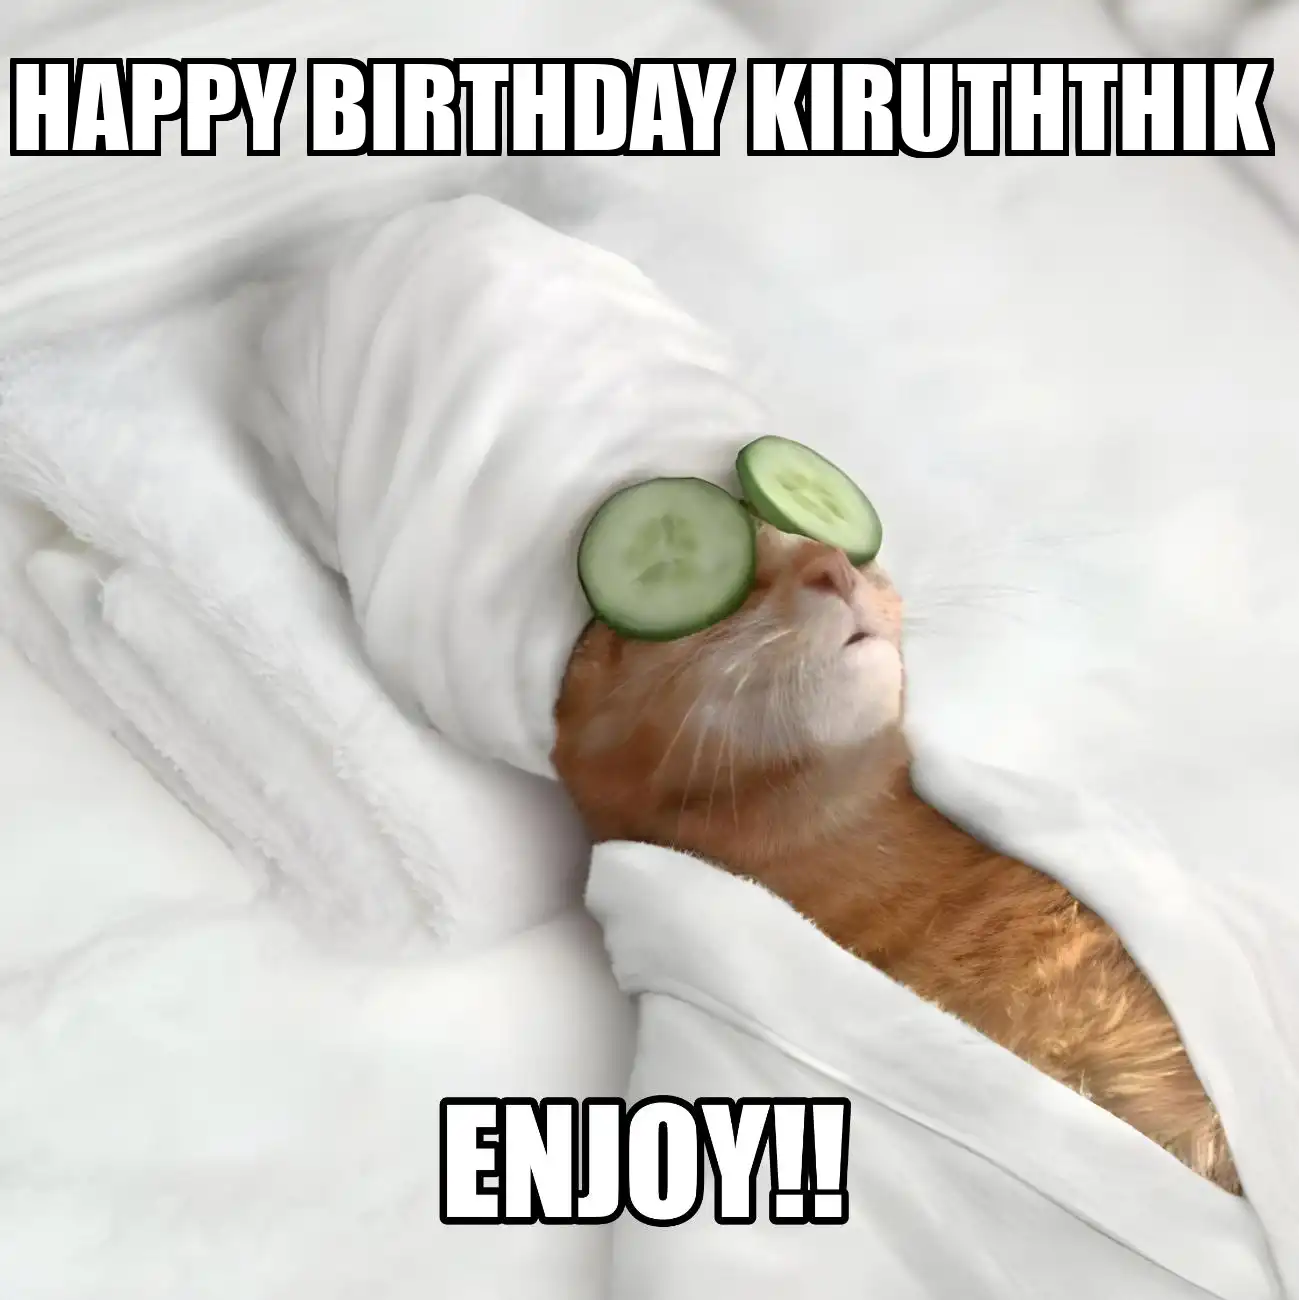 Happy Birthday Kiruththik Enjoy Cat Meme